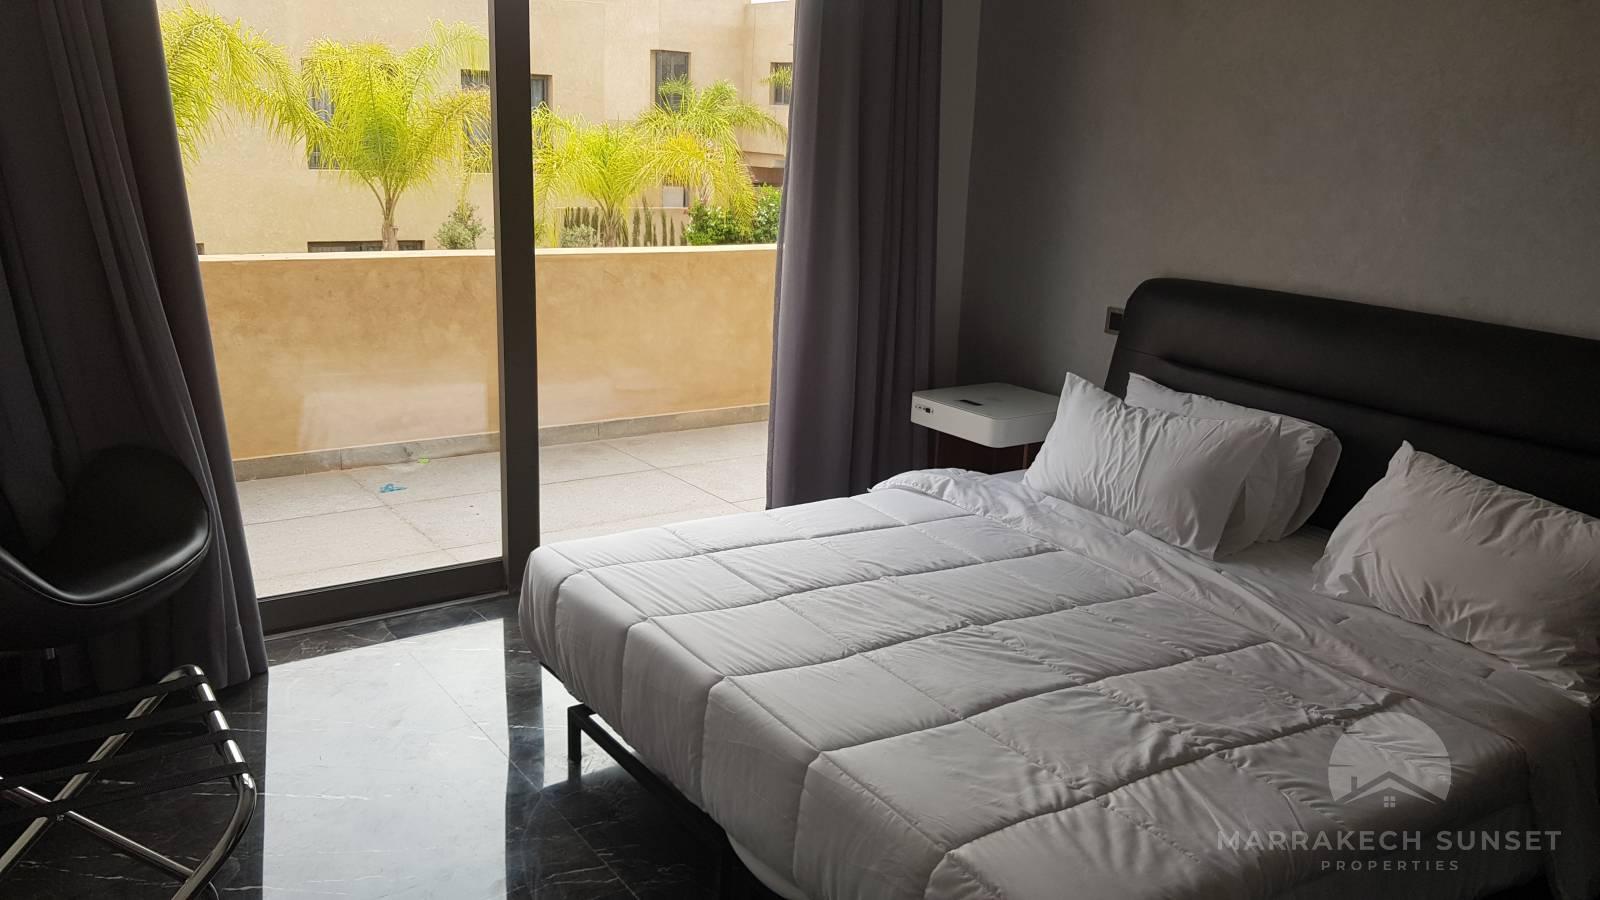 Villa de luxe a vendre a Marrakech de 4 chambres dans un domaine privé